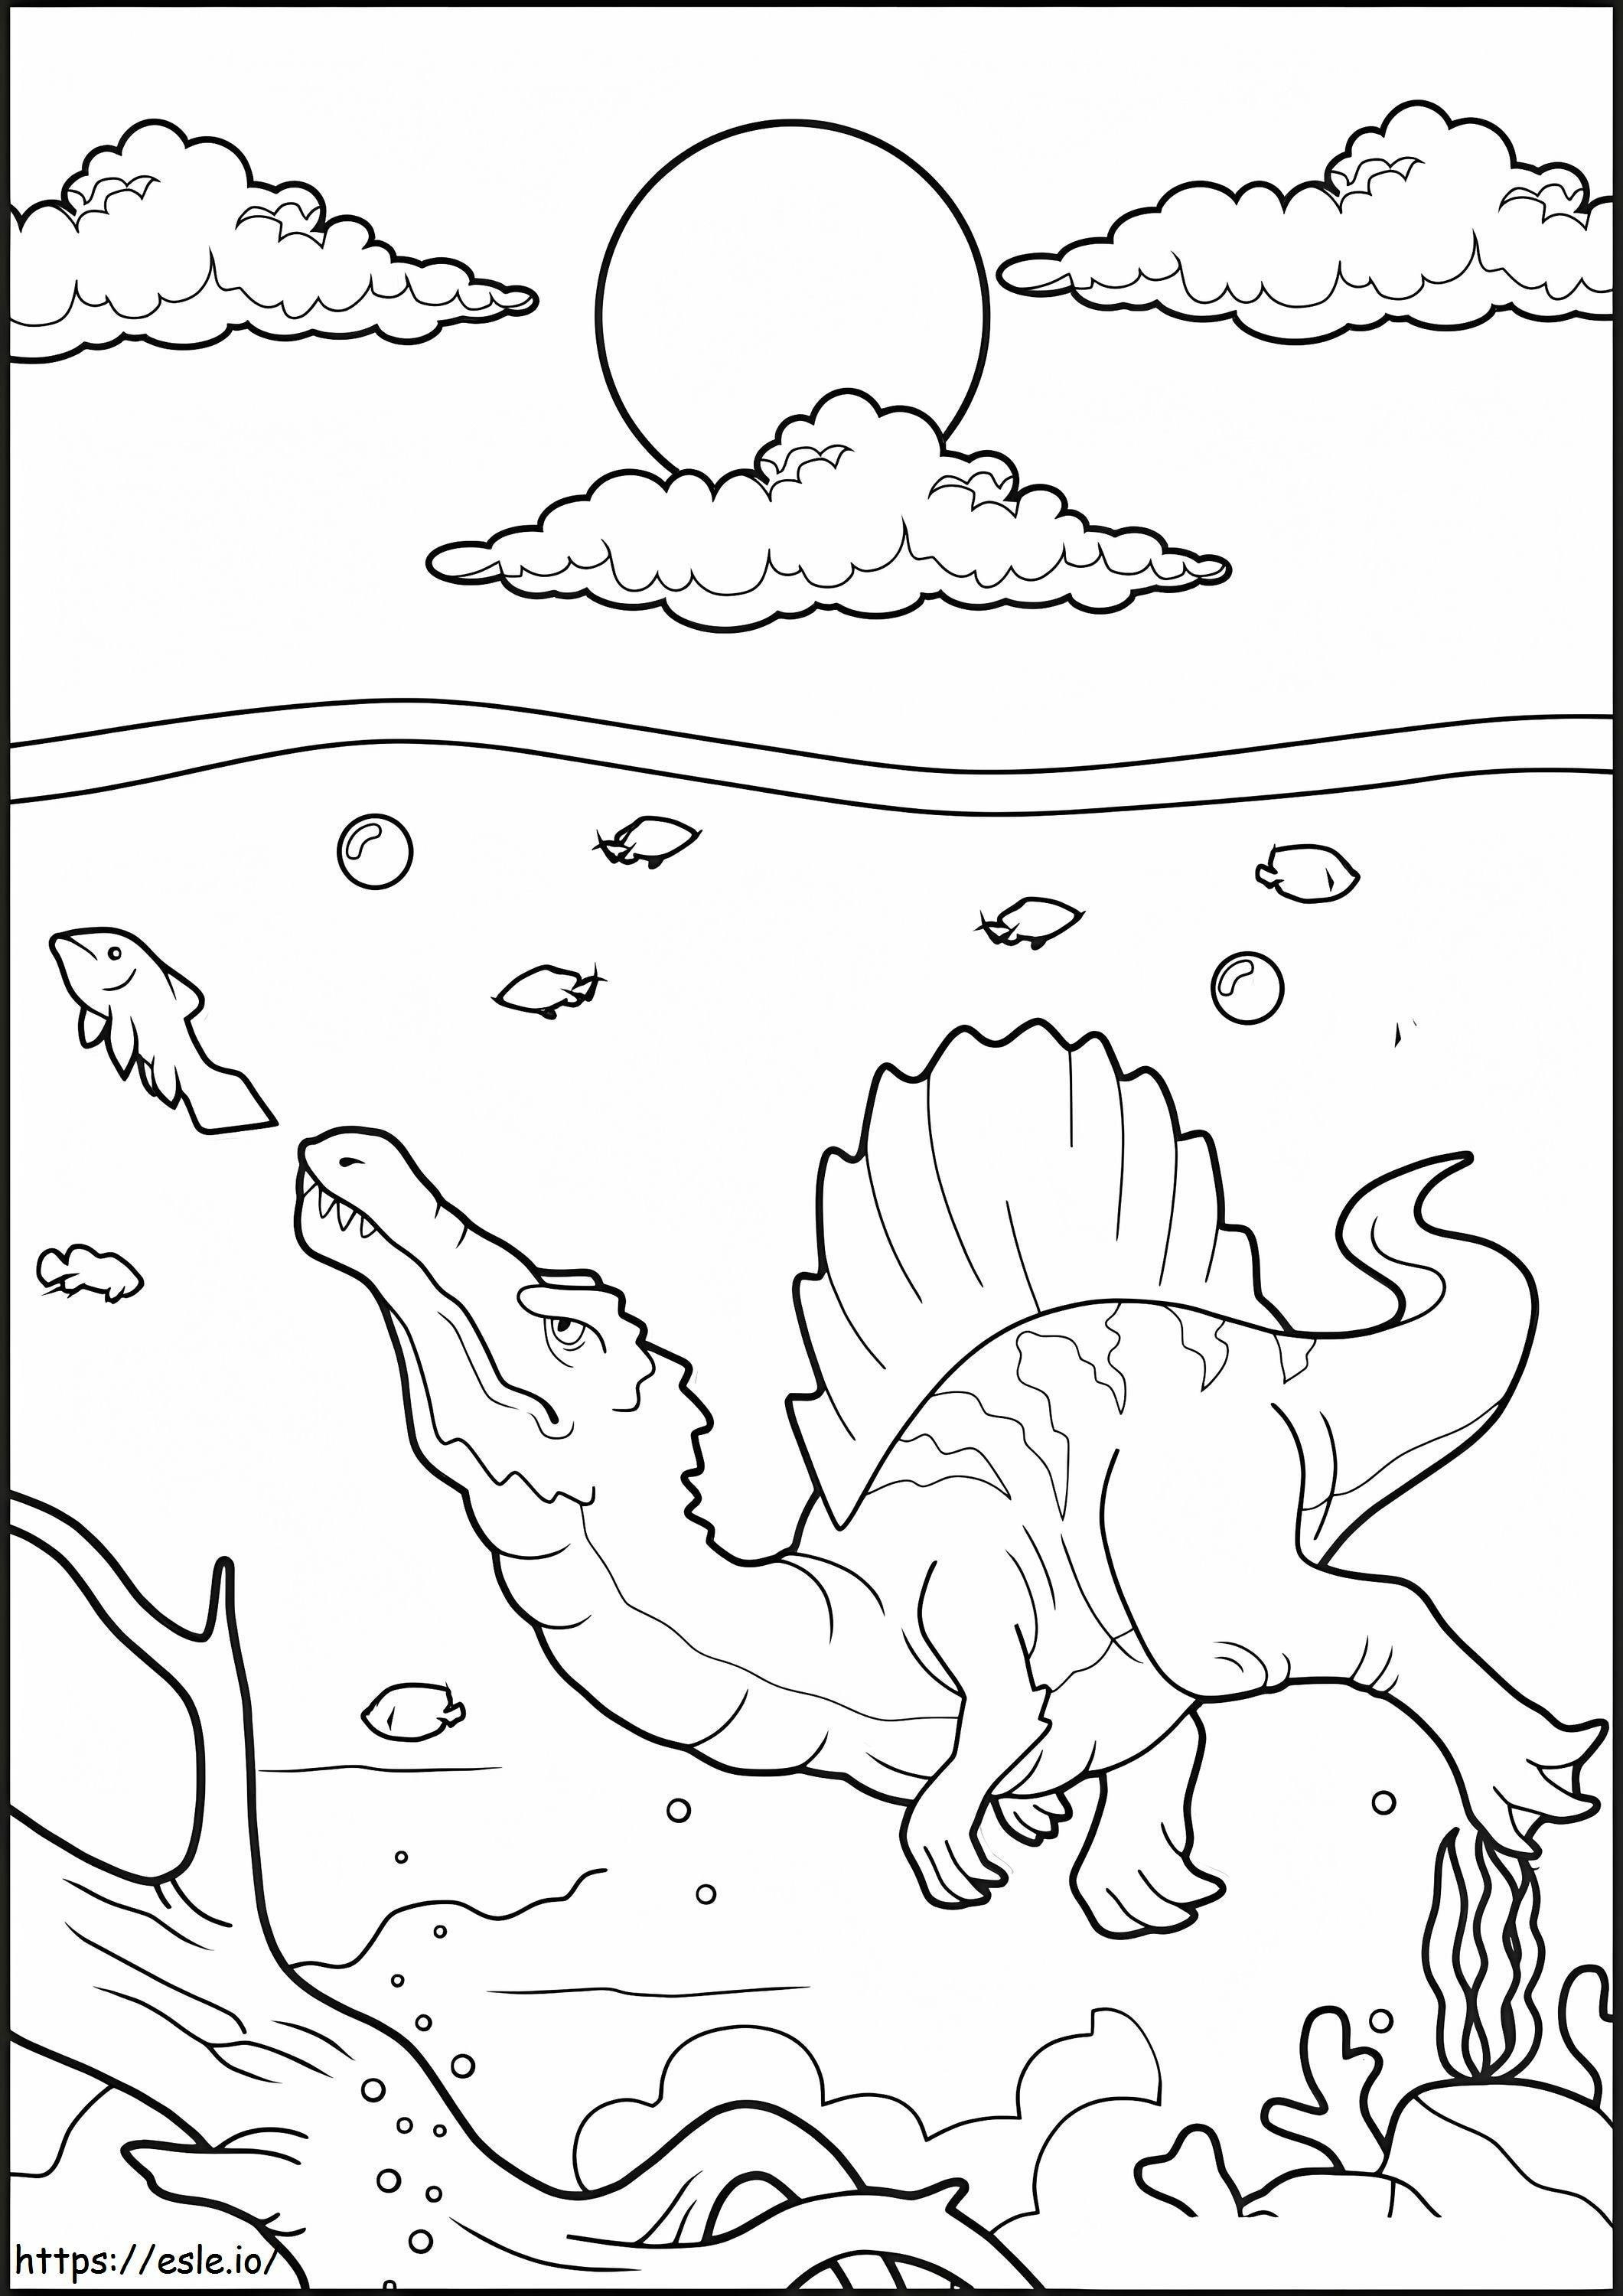 Spinozaur pod wodą kolorowanka